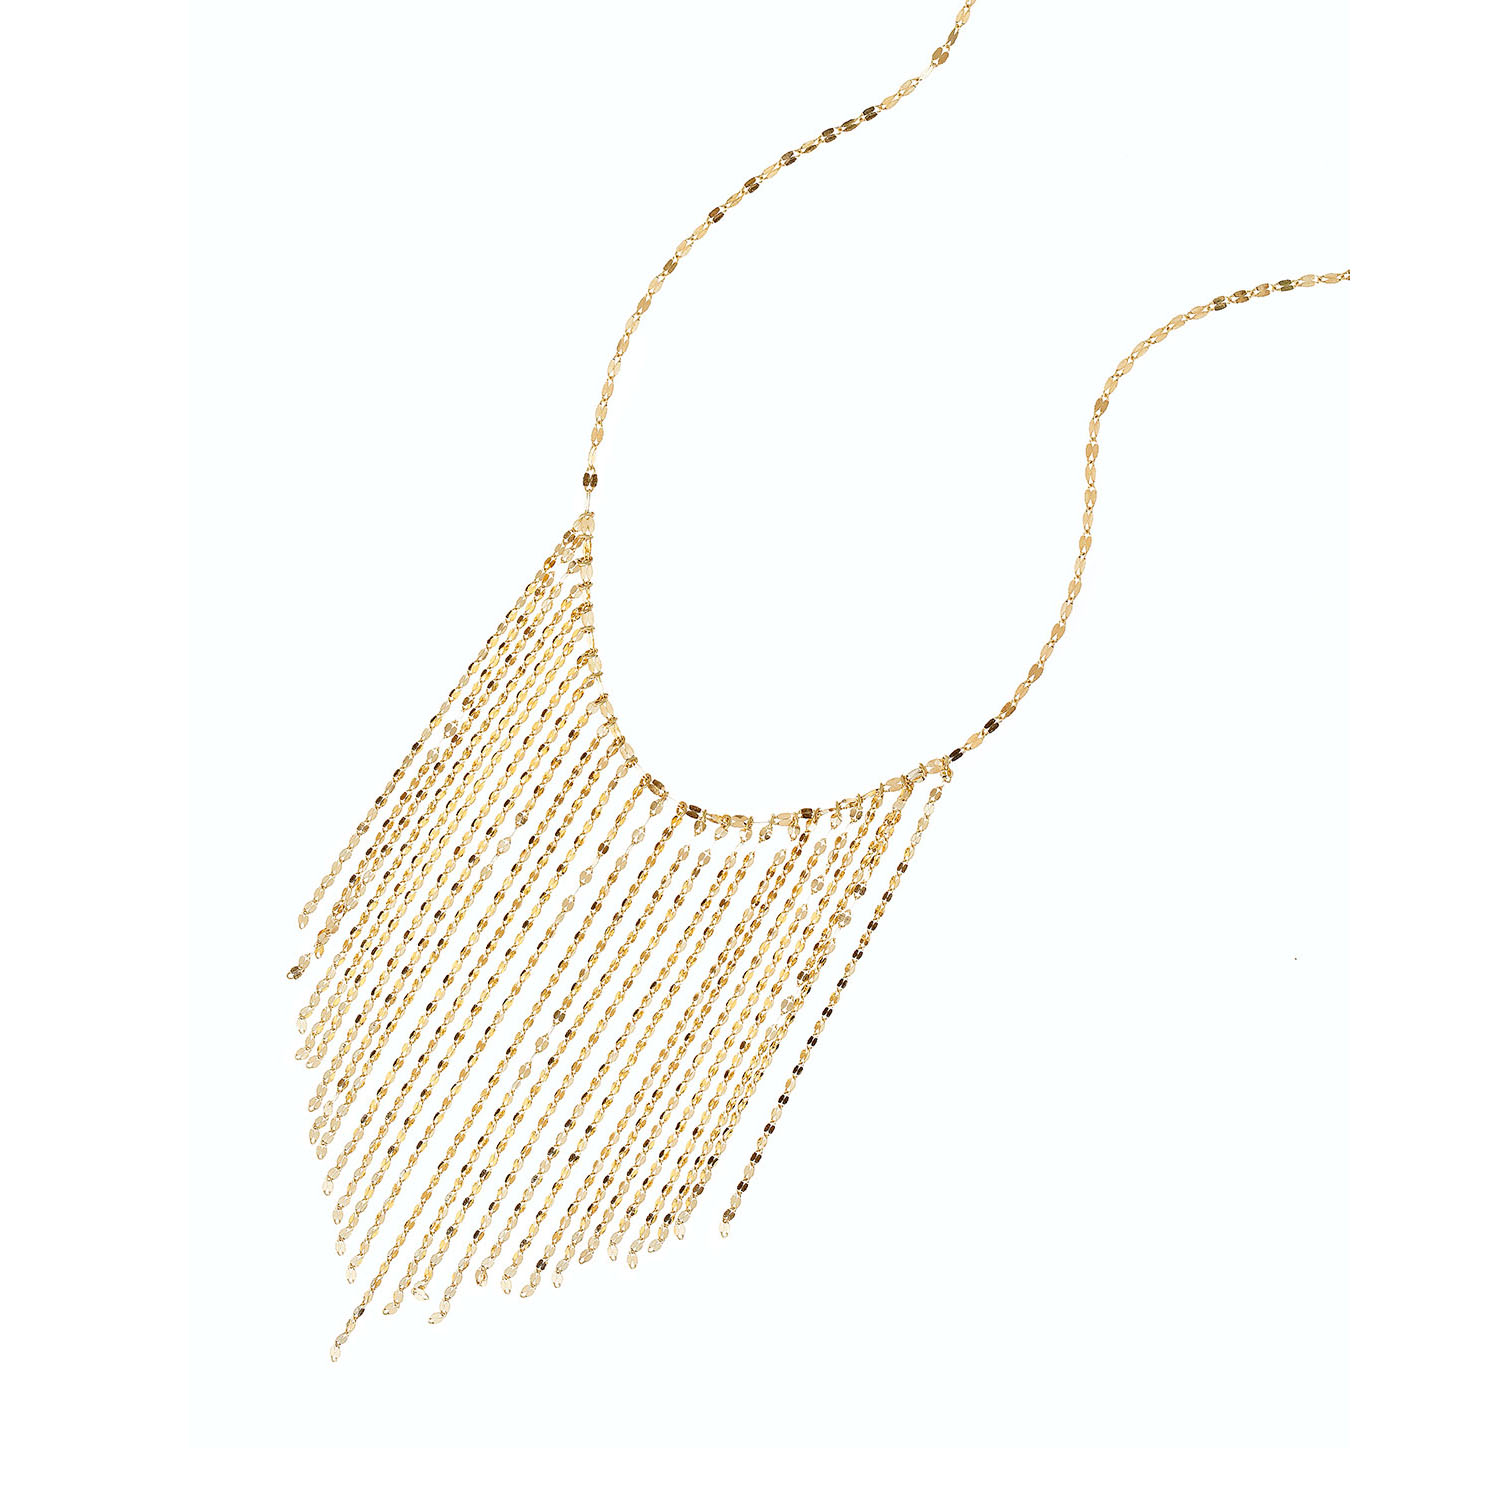 Velkoobchodní zakázkový 14k dlouhý třásňový náhrdelník s OEM/ODM šperky ve zlatém nebo pozlaceném stříbrném sterlingovém provedení